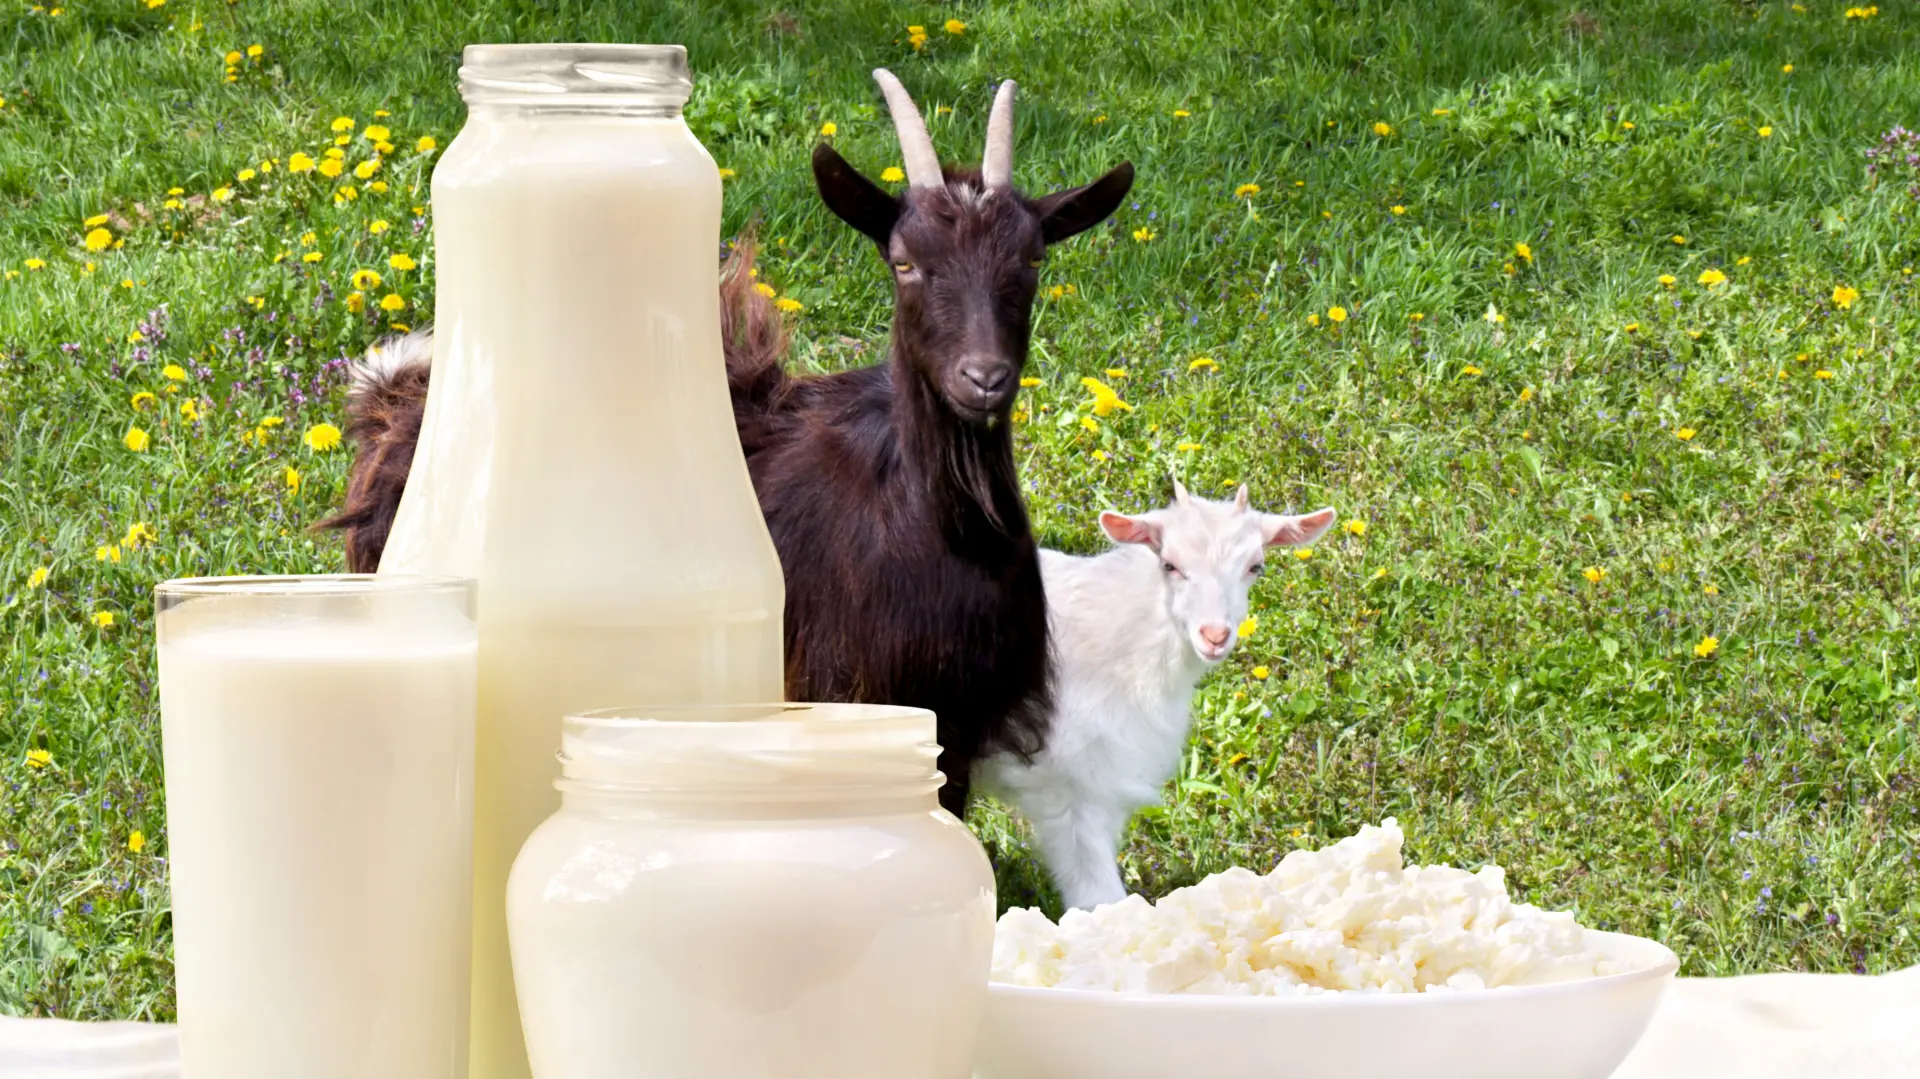 shutterstock_414901216 kiselo mleko, kozje mleko, zdravlje zdrava hrana-651e954691bdd.webp